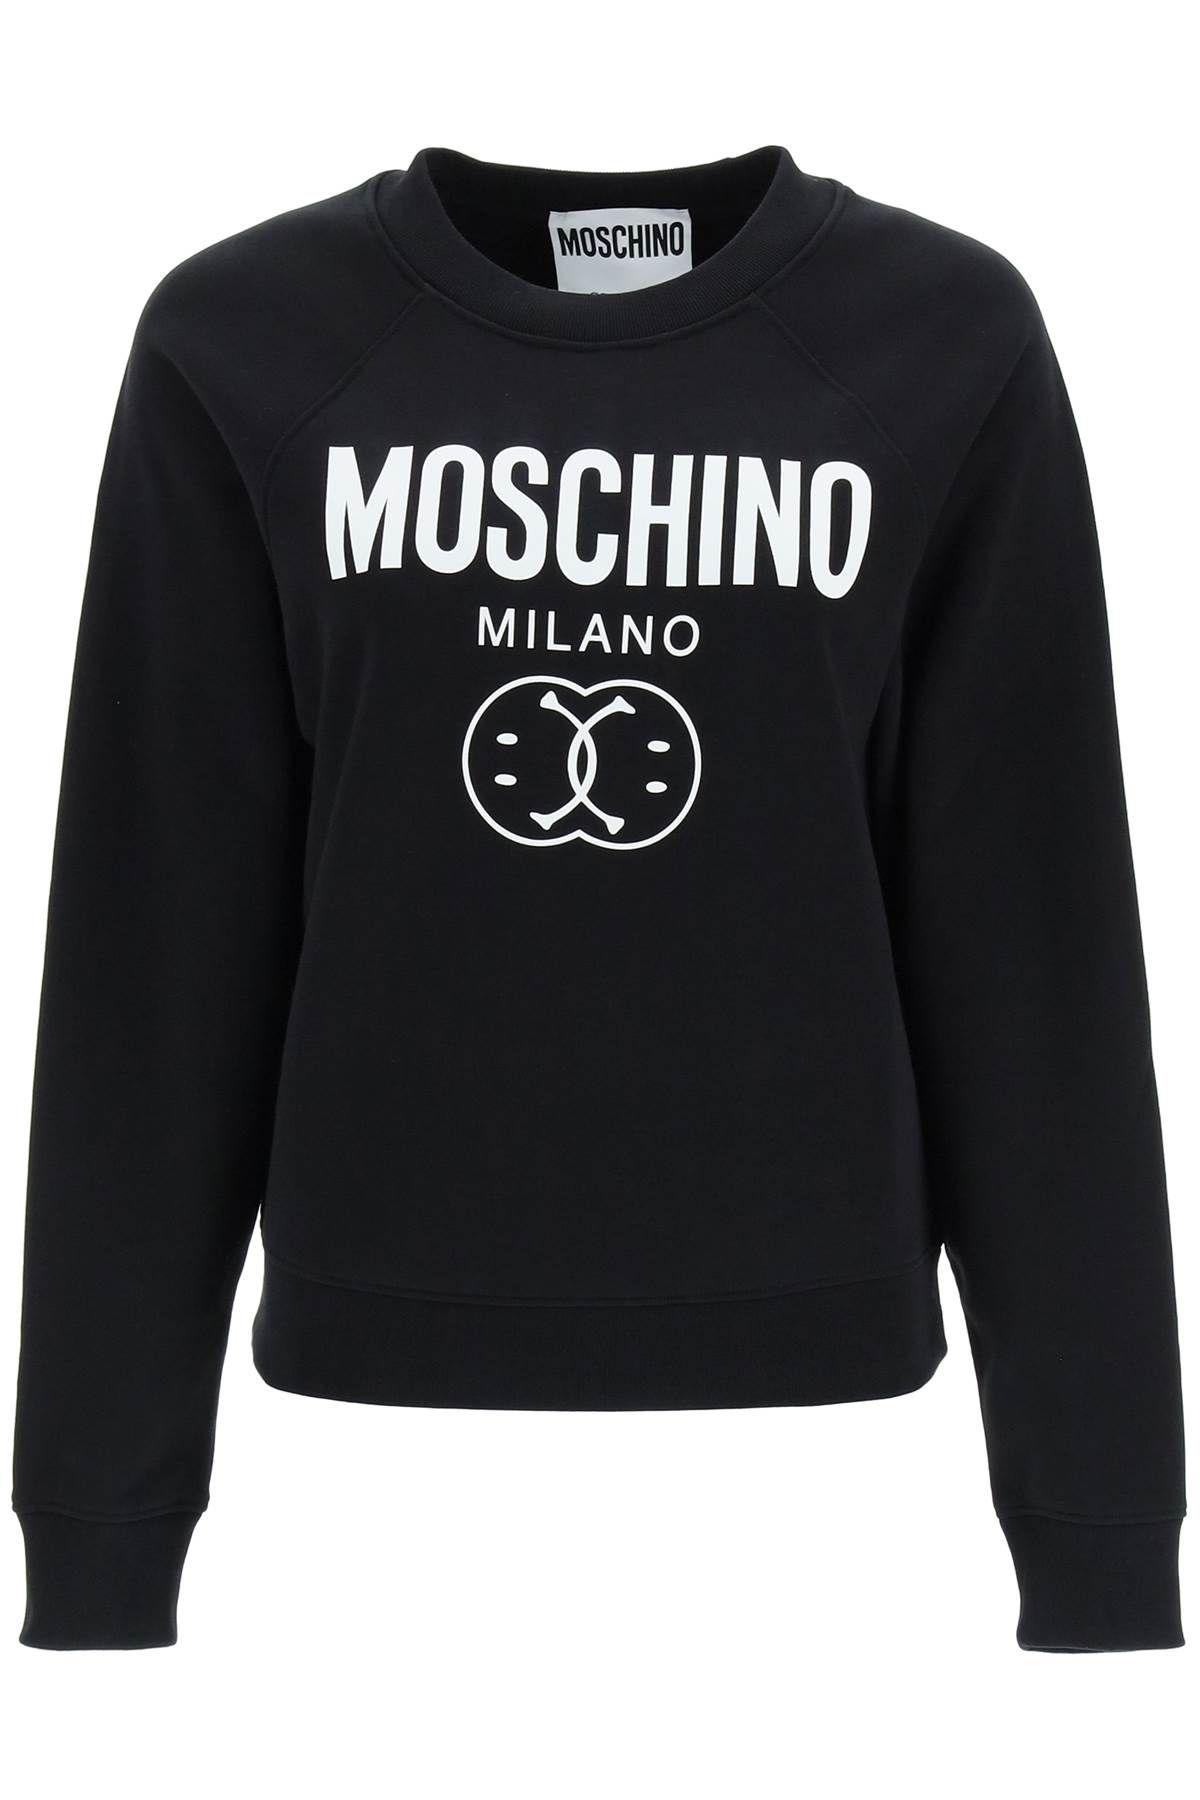 Moschino Double Smiley Sweatshirt